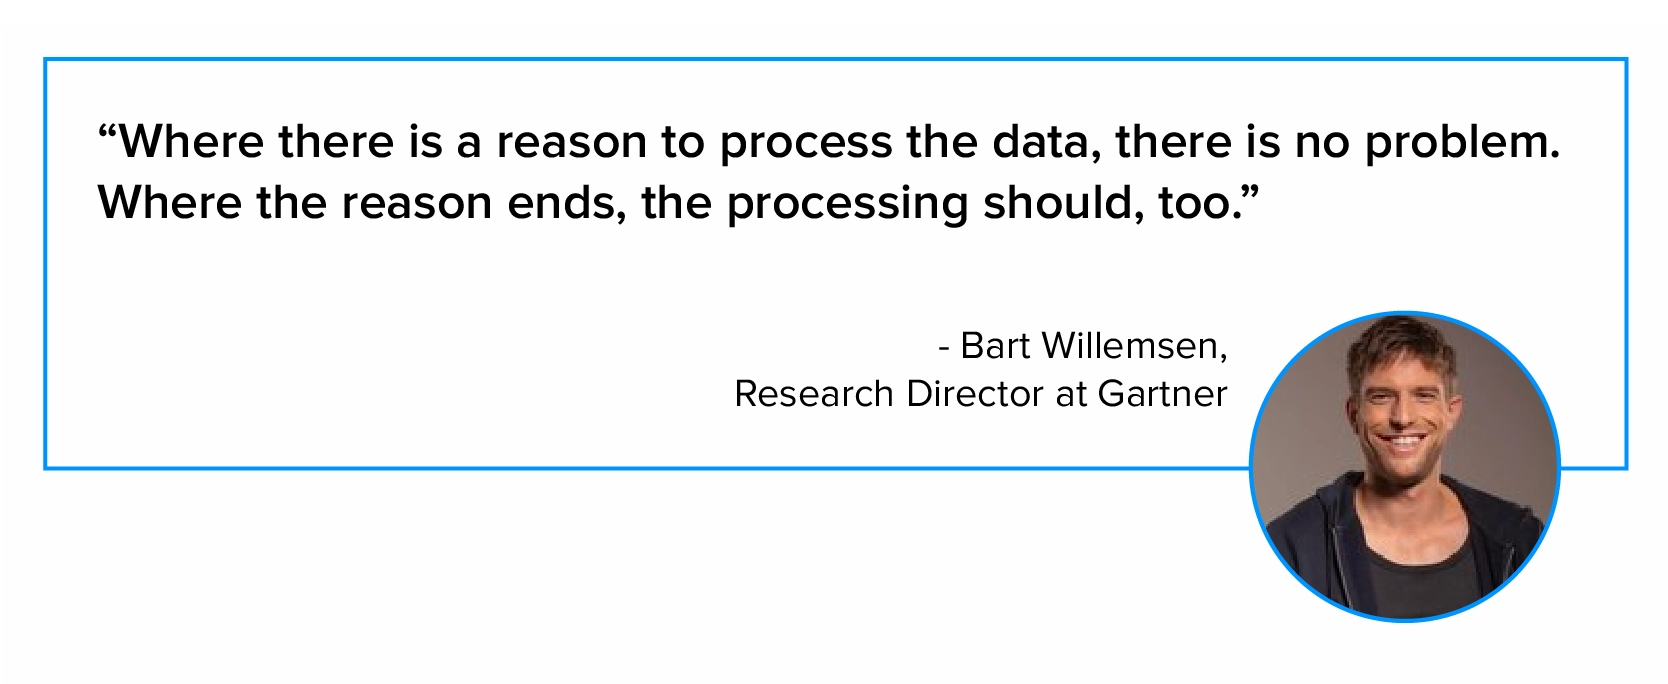 اقتباس عن معالجة البيانات بواسطة بارت ويليمسن